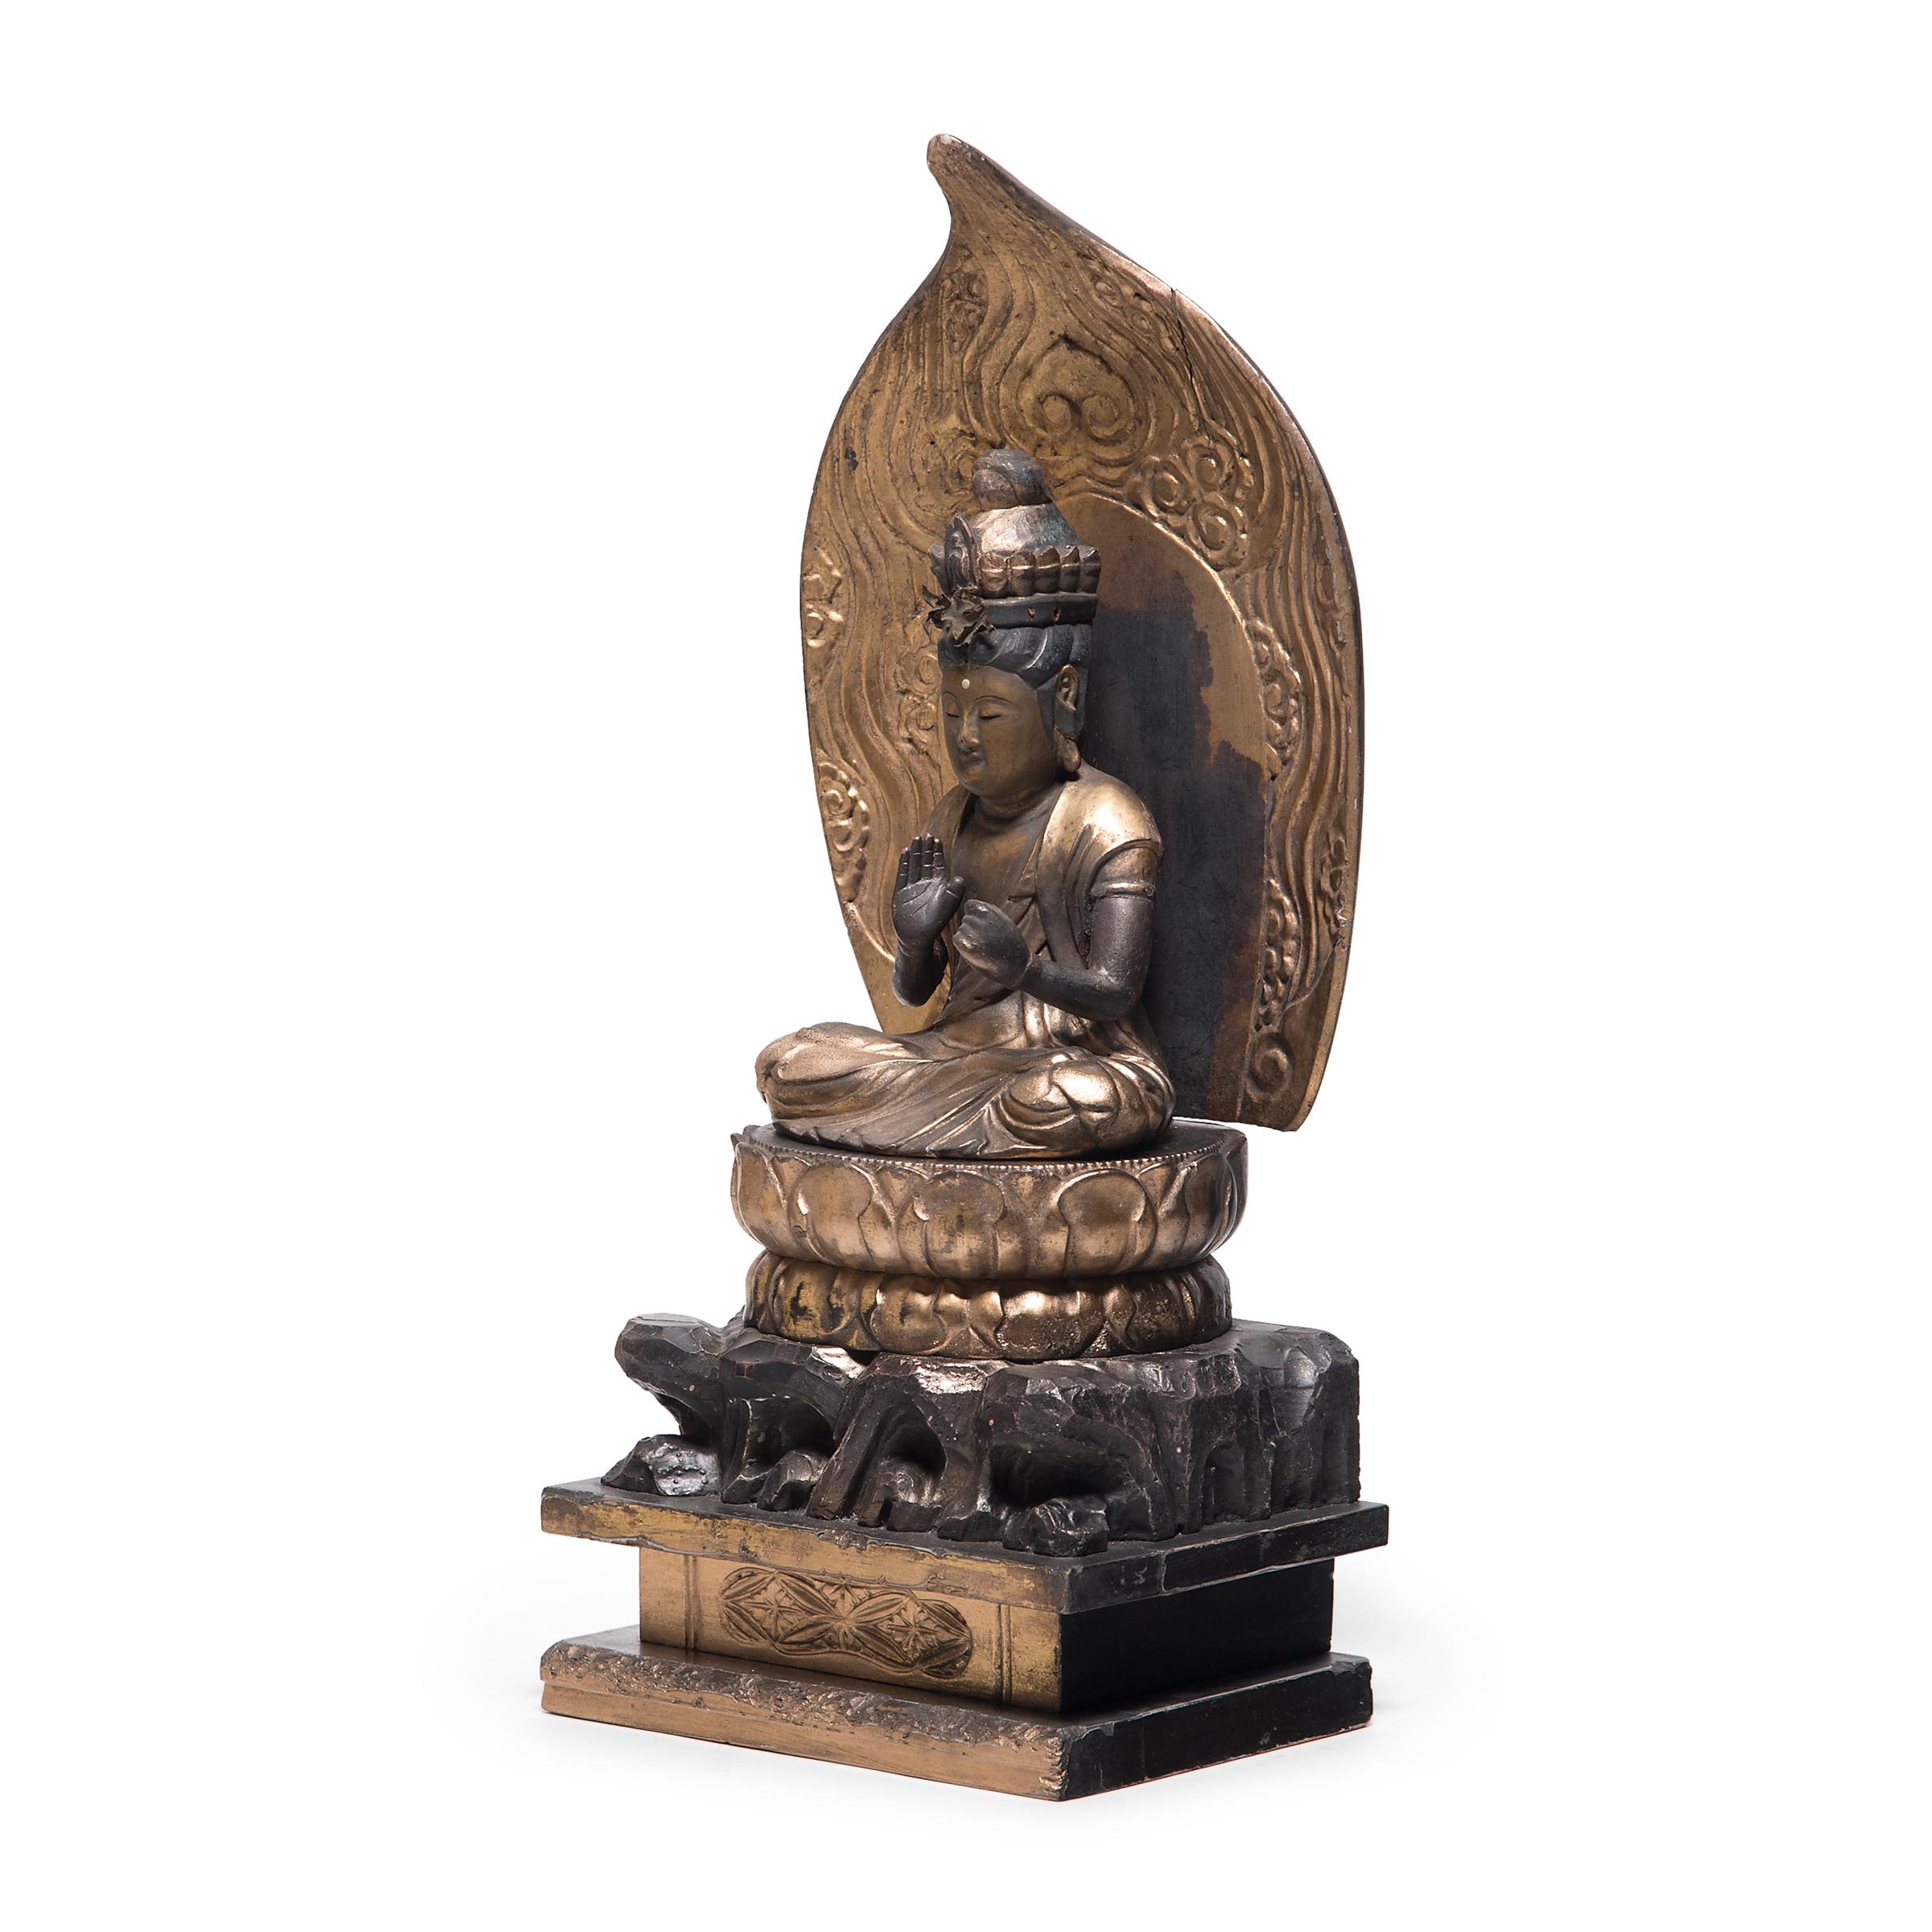 Die kunstvoll geschnitzte und mit vergoldetem schwarzen Lack überzogene sitzende Figur stellt den Bodhisattva Guanyin dar, der im japanischen Buddhismus als Kannon bekannt ist. Beschrieben als der 